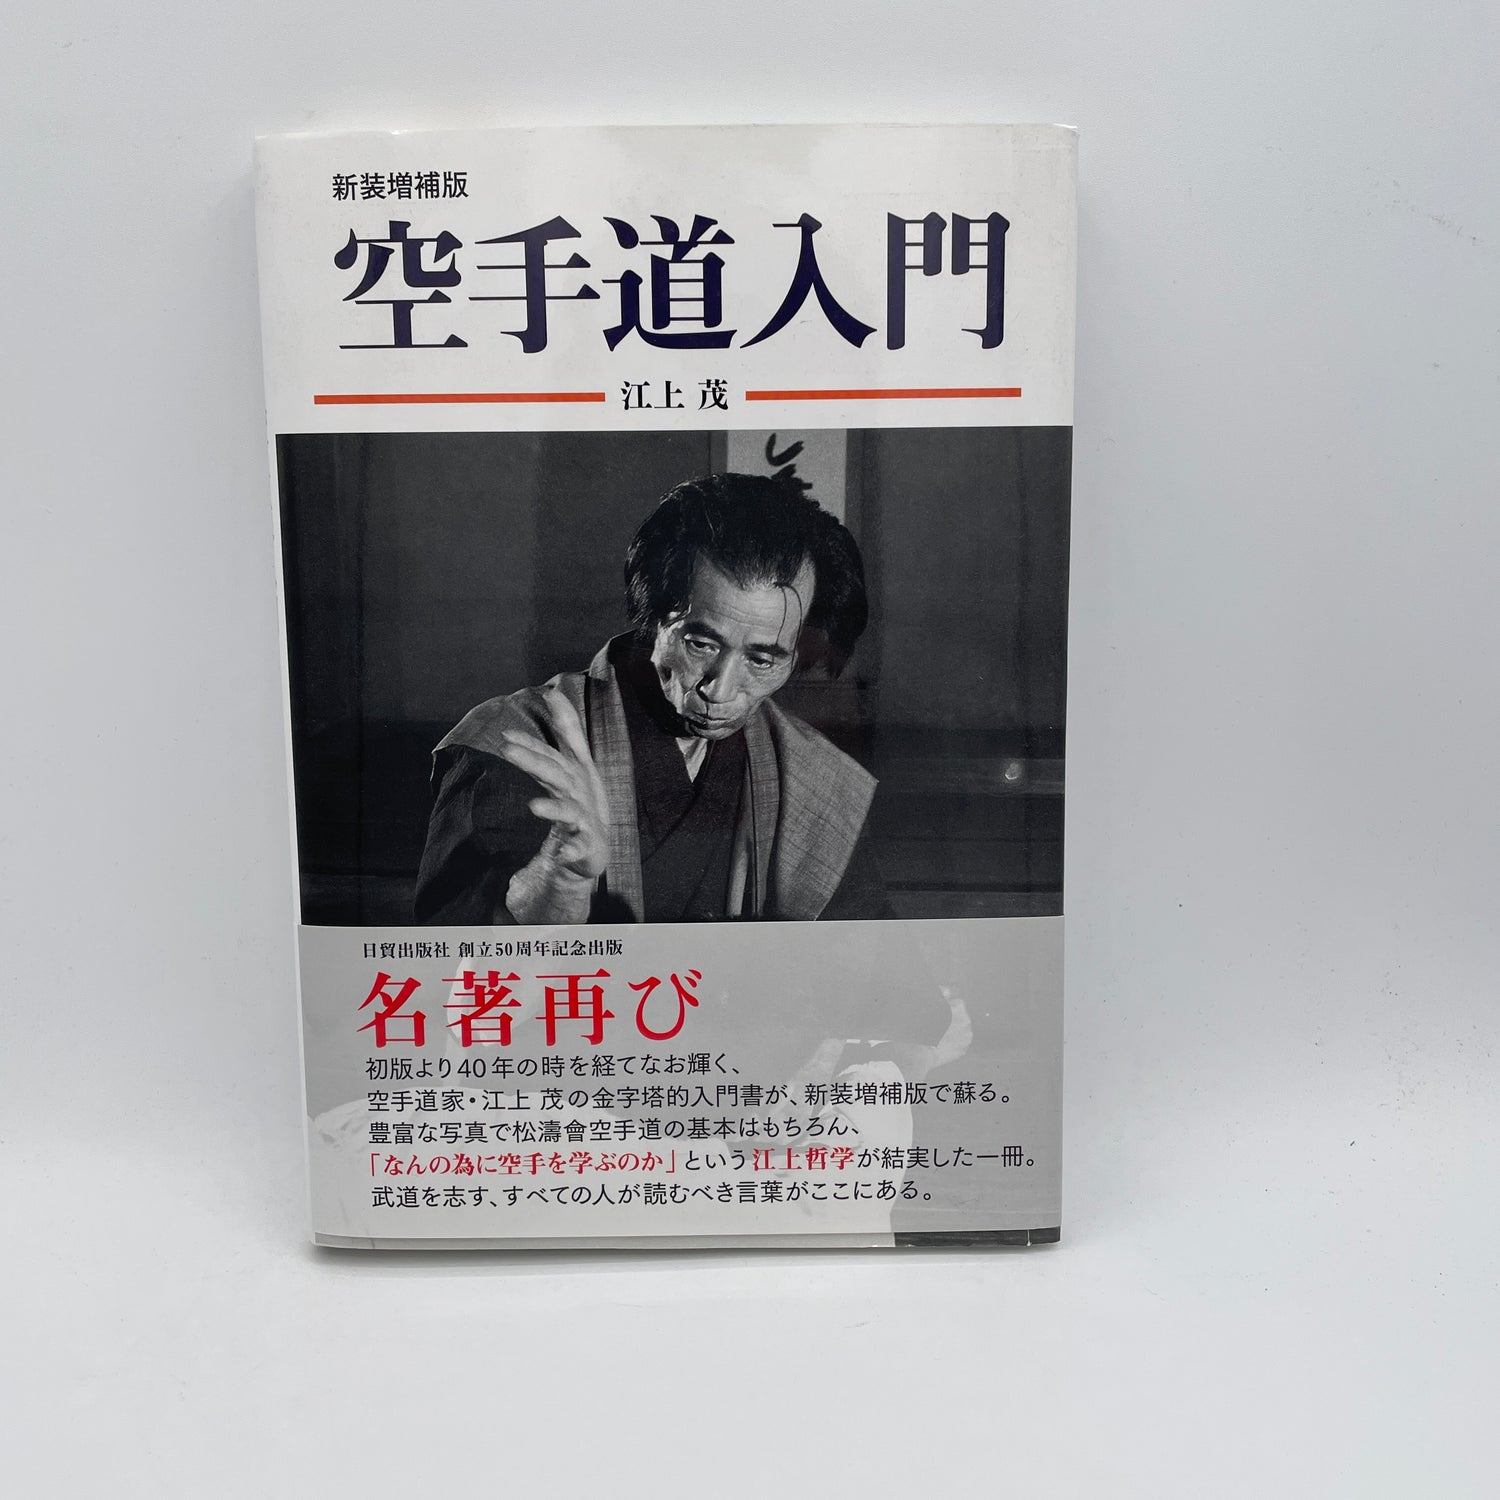 Introducción al libro de Karatedo (revisado) de Shigeru Egami